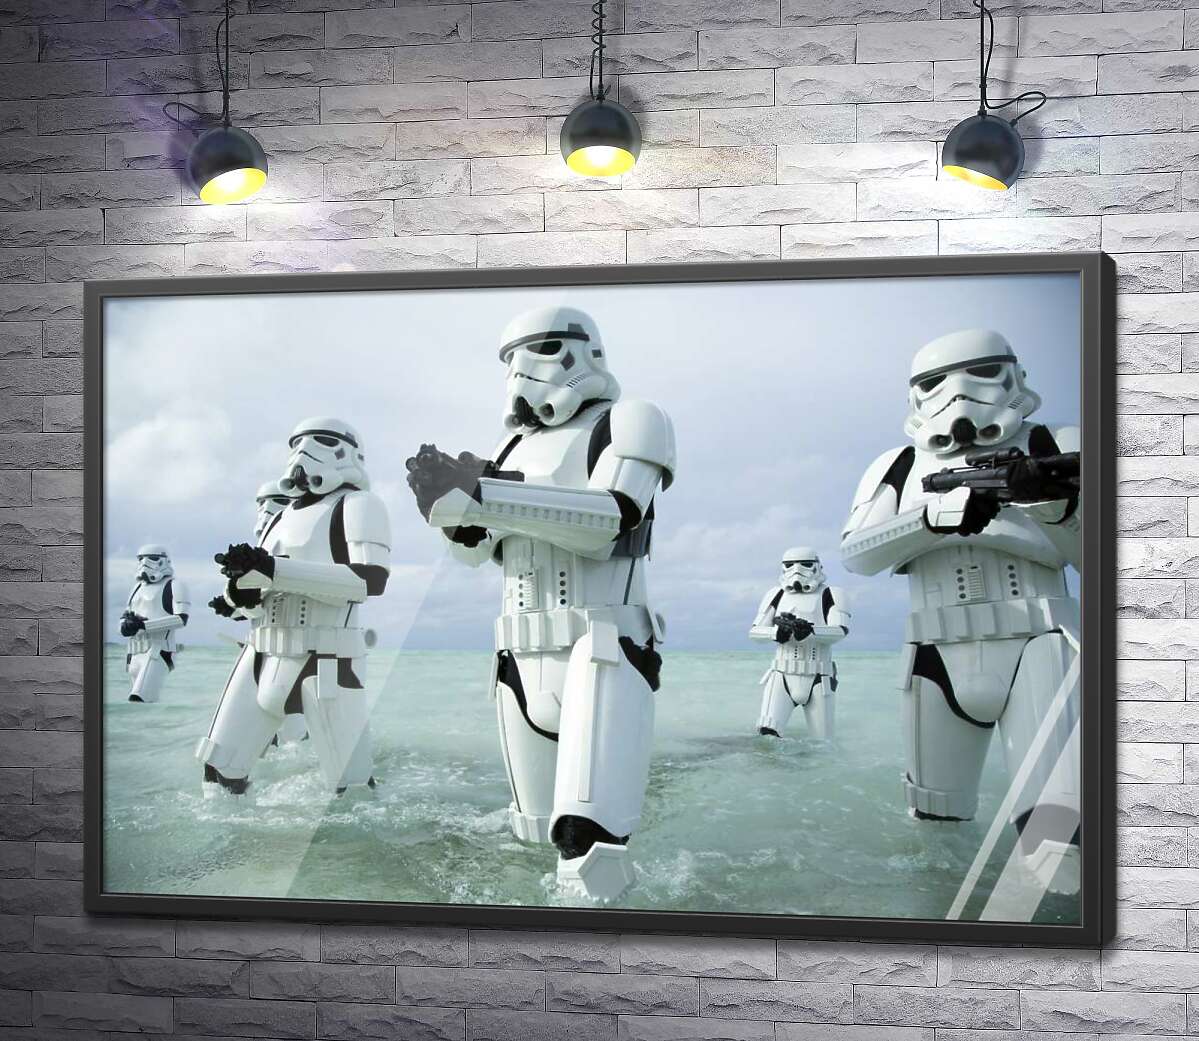 постер Наступление клонов с оружием в фильме "Звездные войны" (Star Wars)